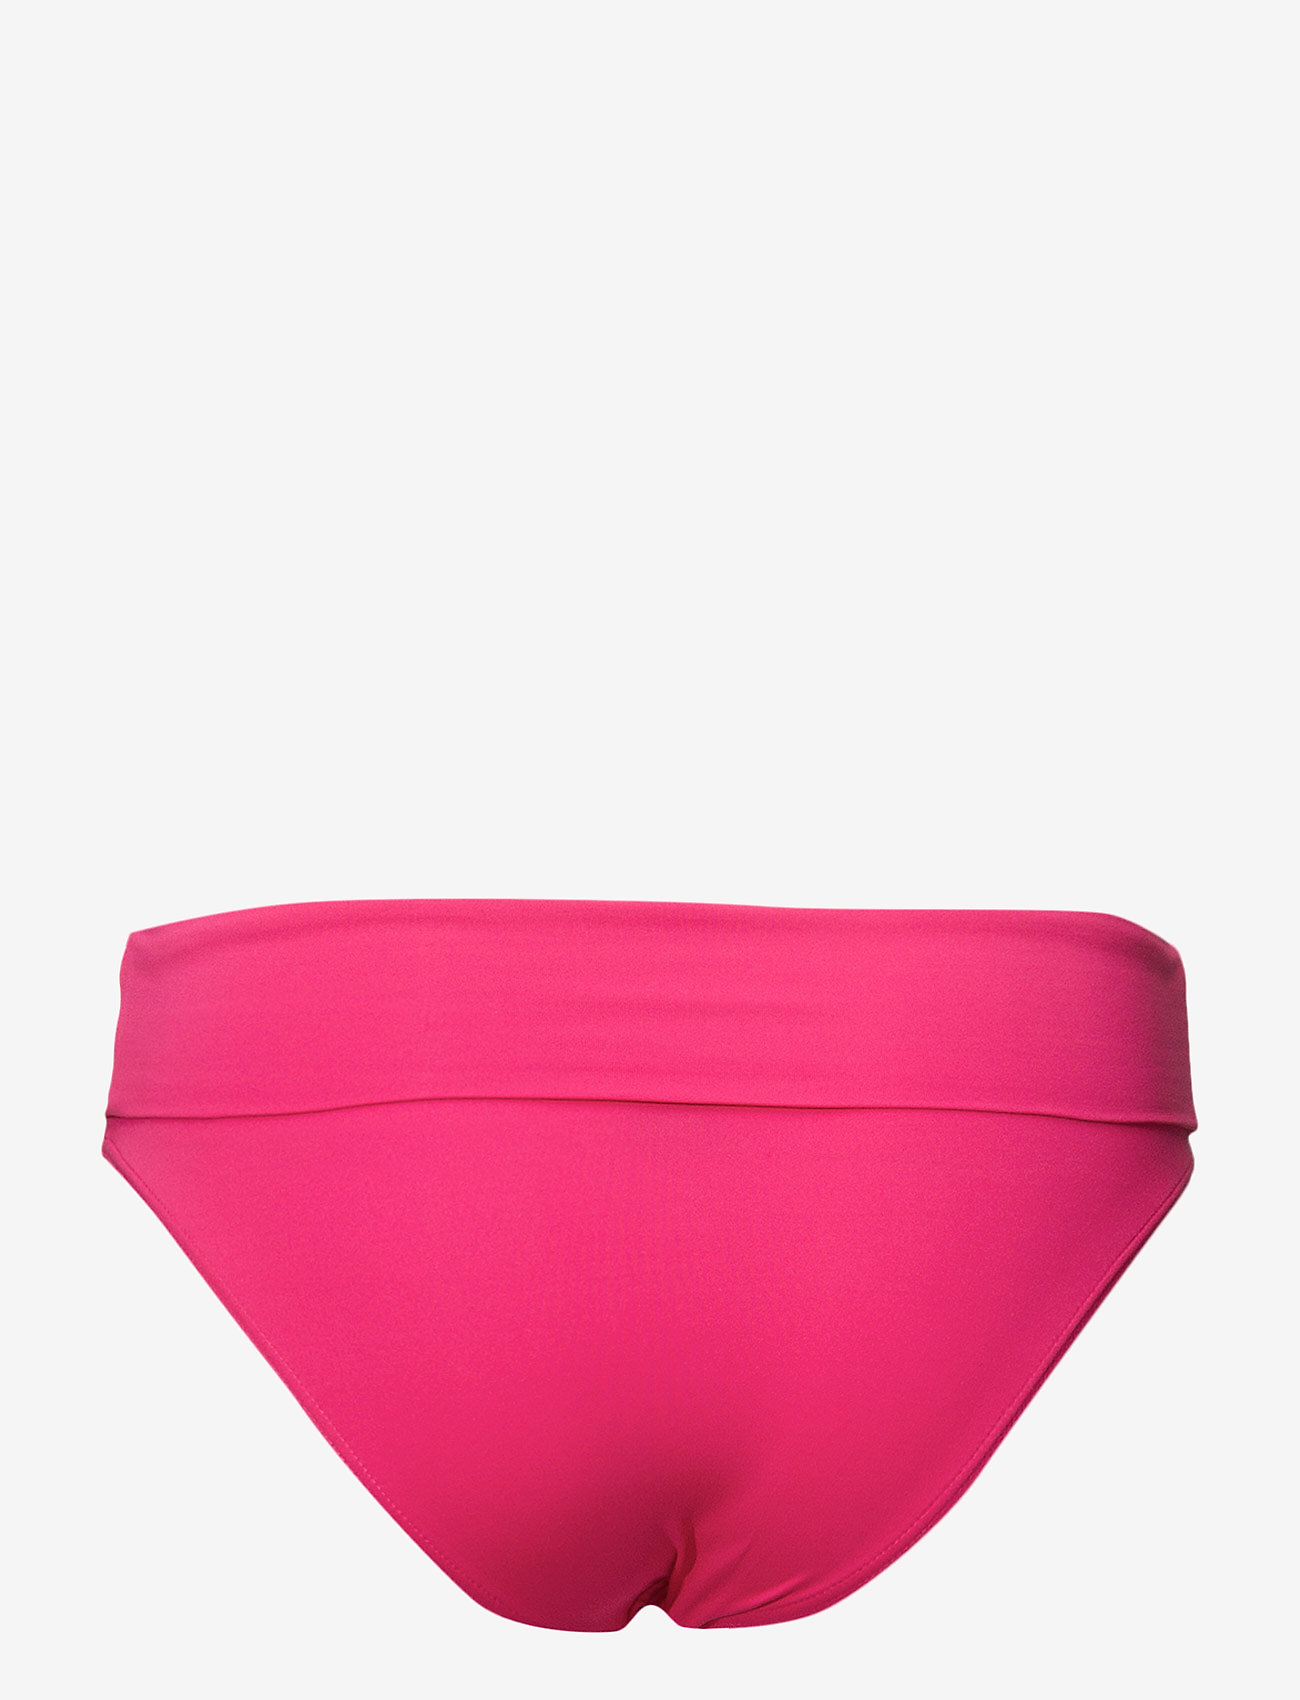 Panos Emporio - ATHENA-9 - bikini briefs - pink - 1